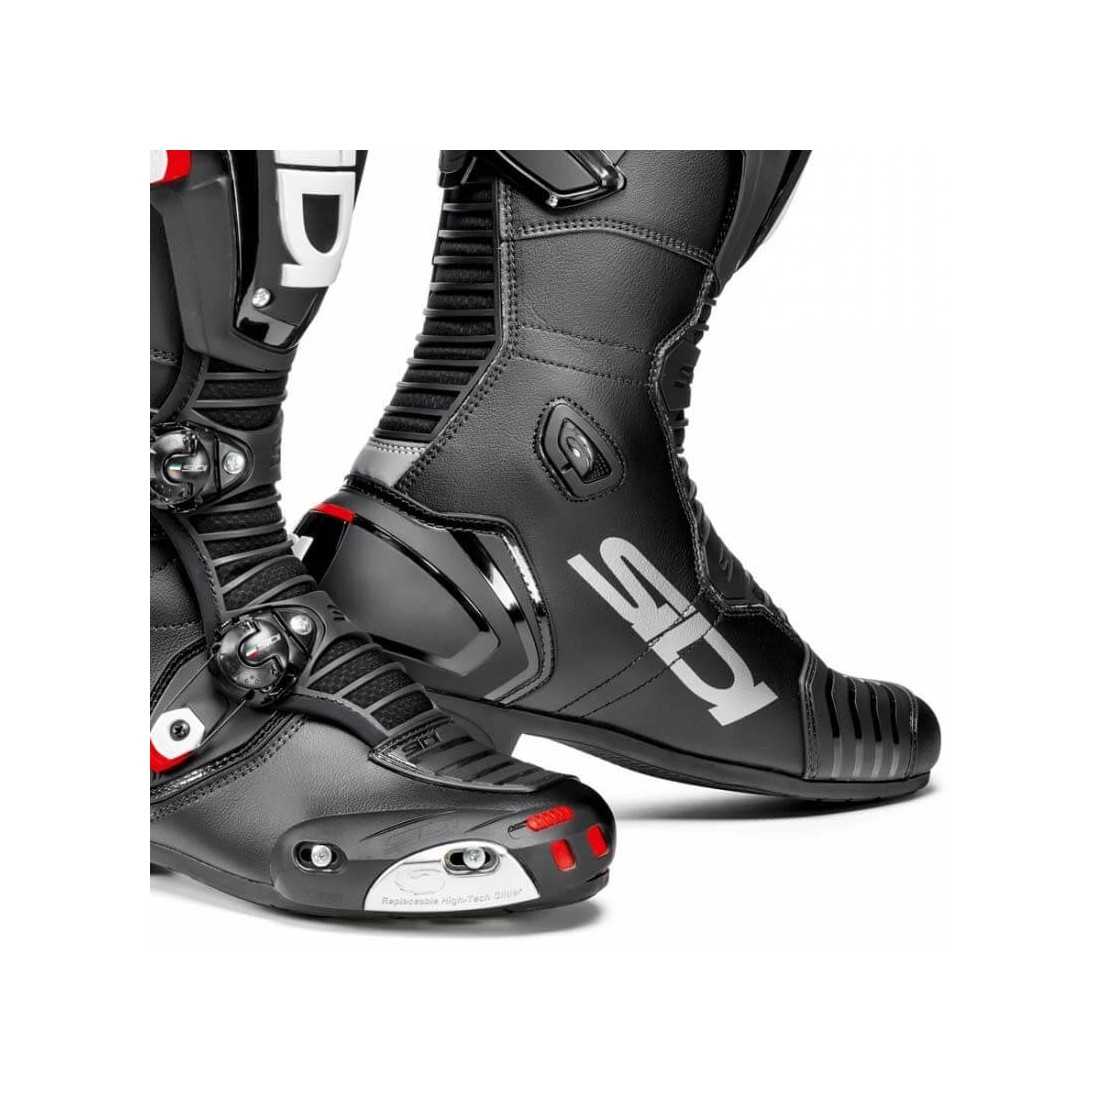 Sidi Mag-1 racing boots